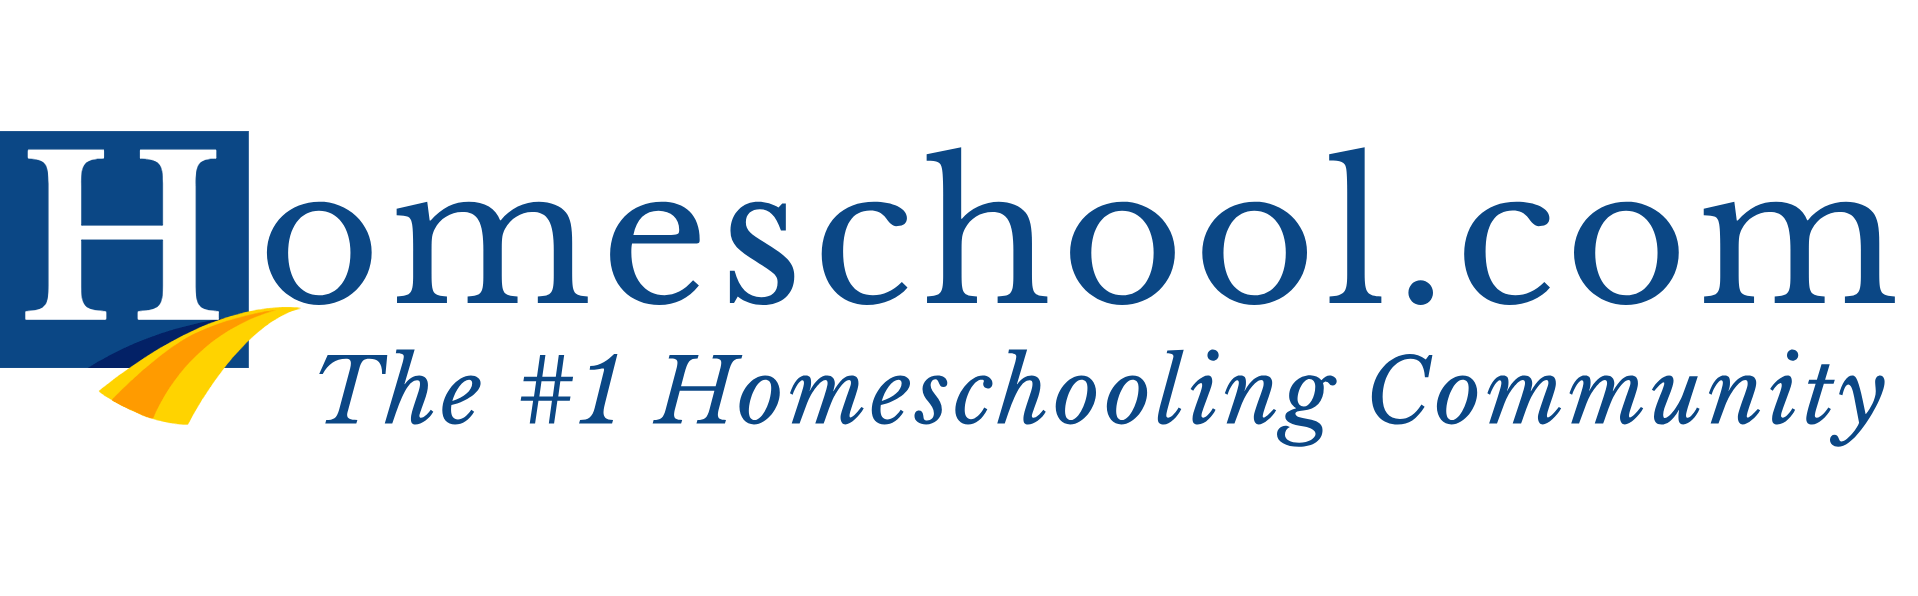 Homeschool.com logo